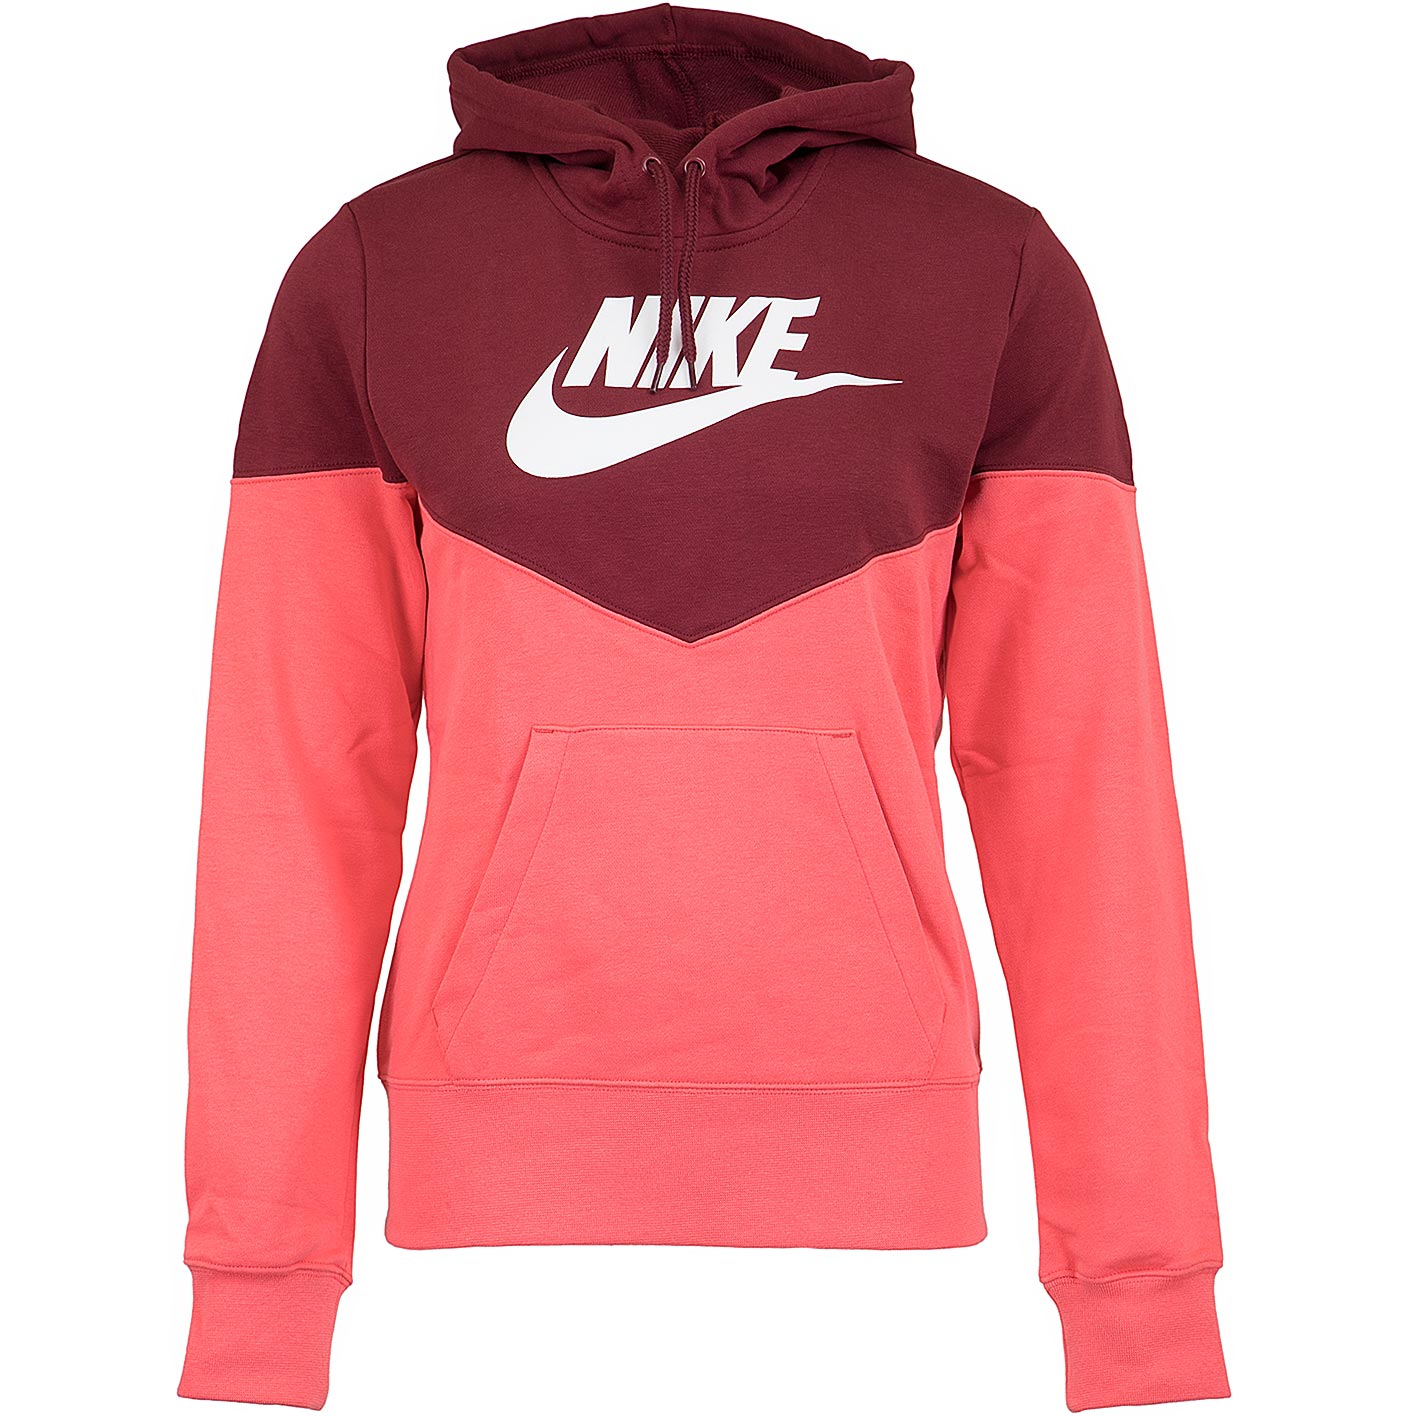 ☆ Nike Damen Hoody Heritage Fleece weinrot/pink - hier bestellen!